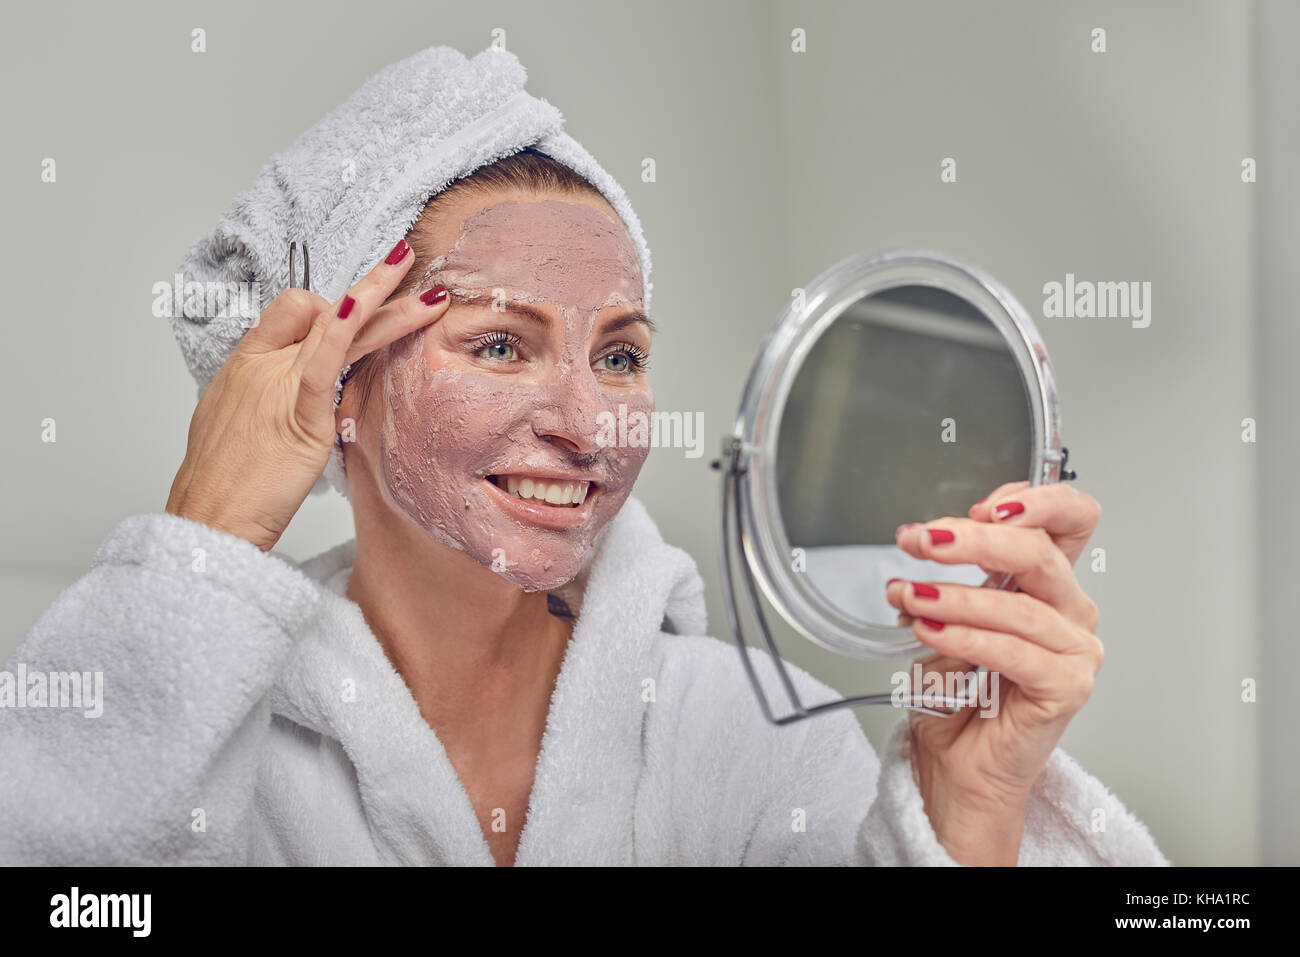 Attraktive Frau das Tragen einer Schutzmaske, Schönheitsbehandlungen, ein Spiegel, wie sie ihre Augenbrauen zupft mit Pinzette Stockfoto